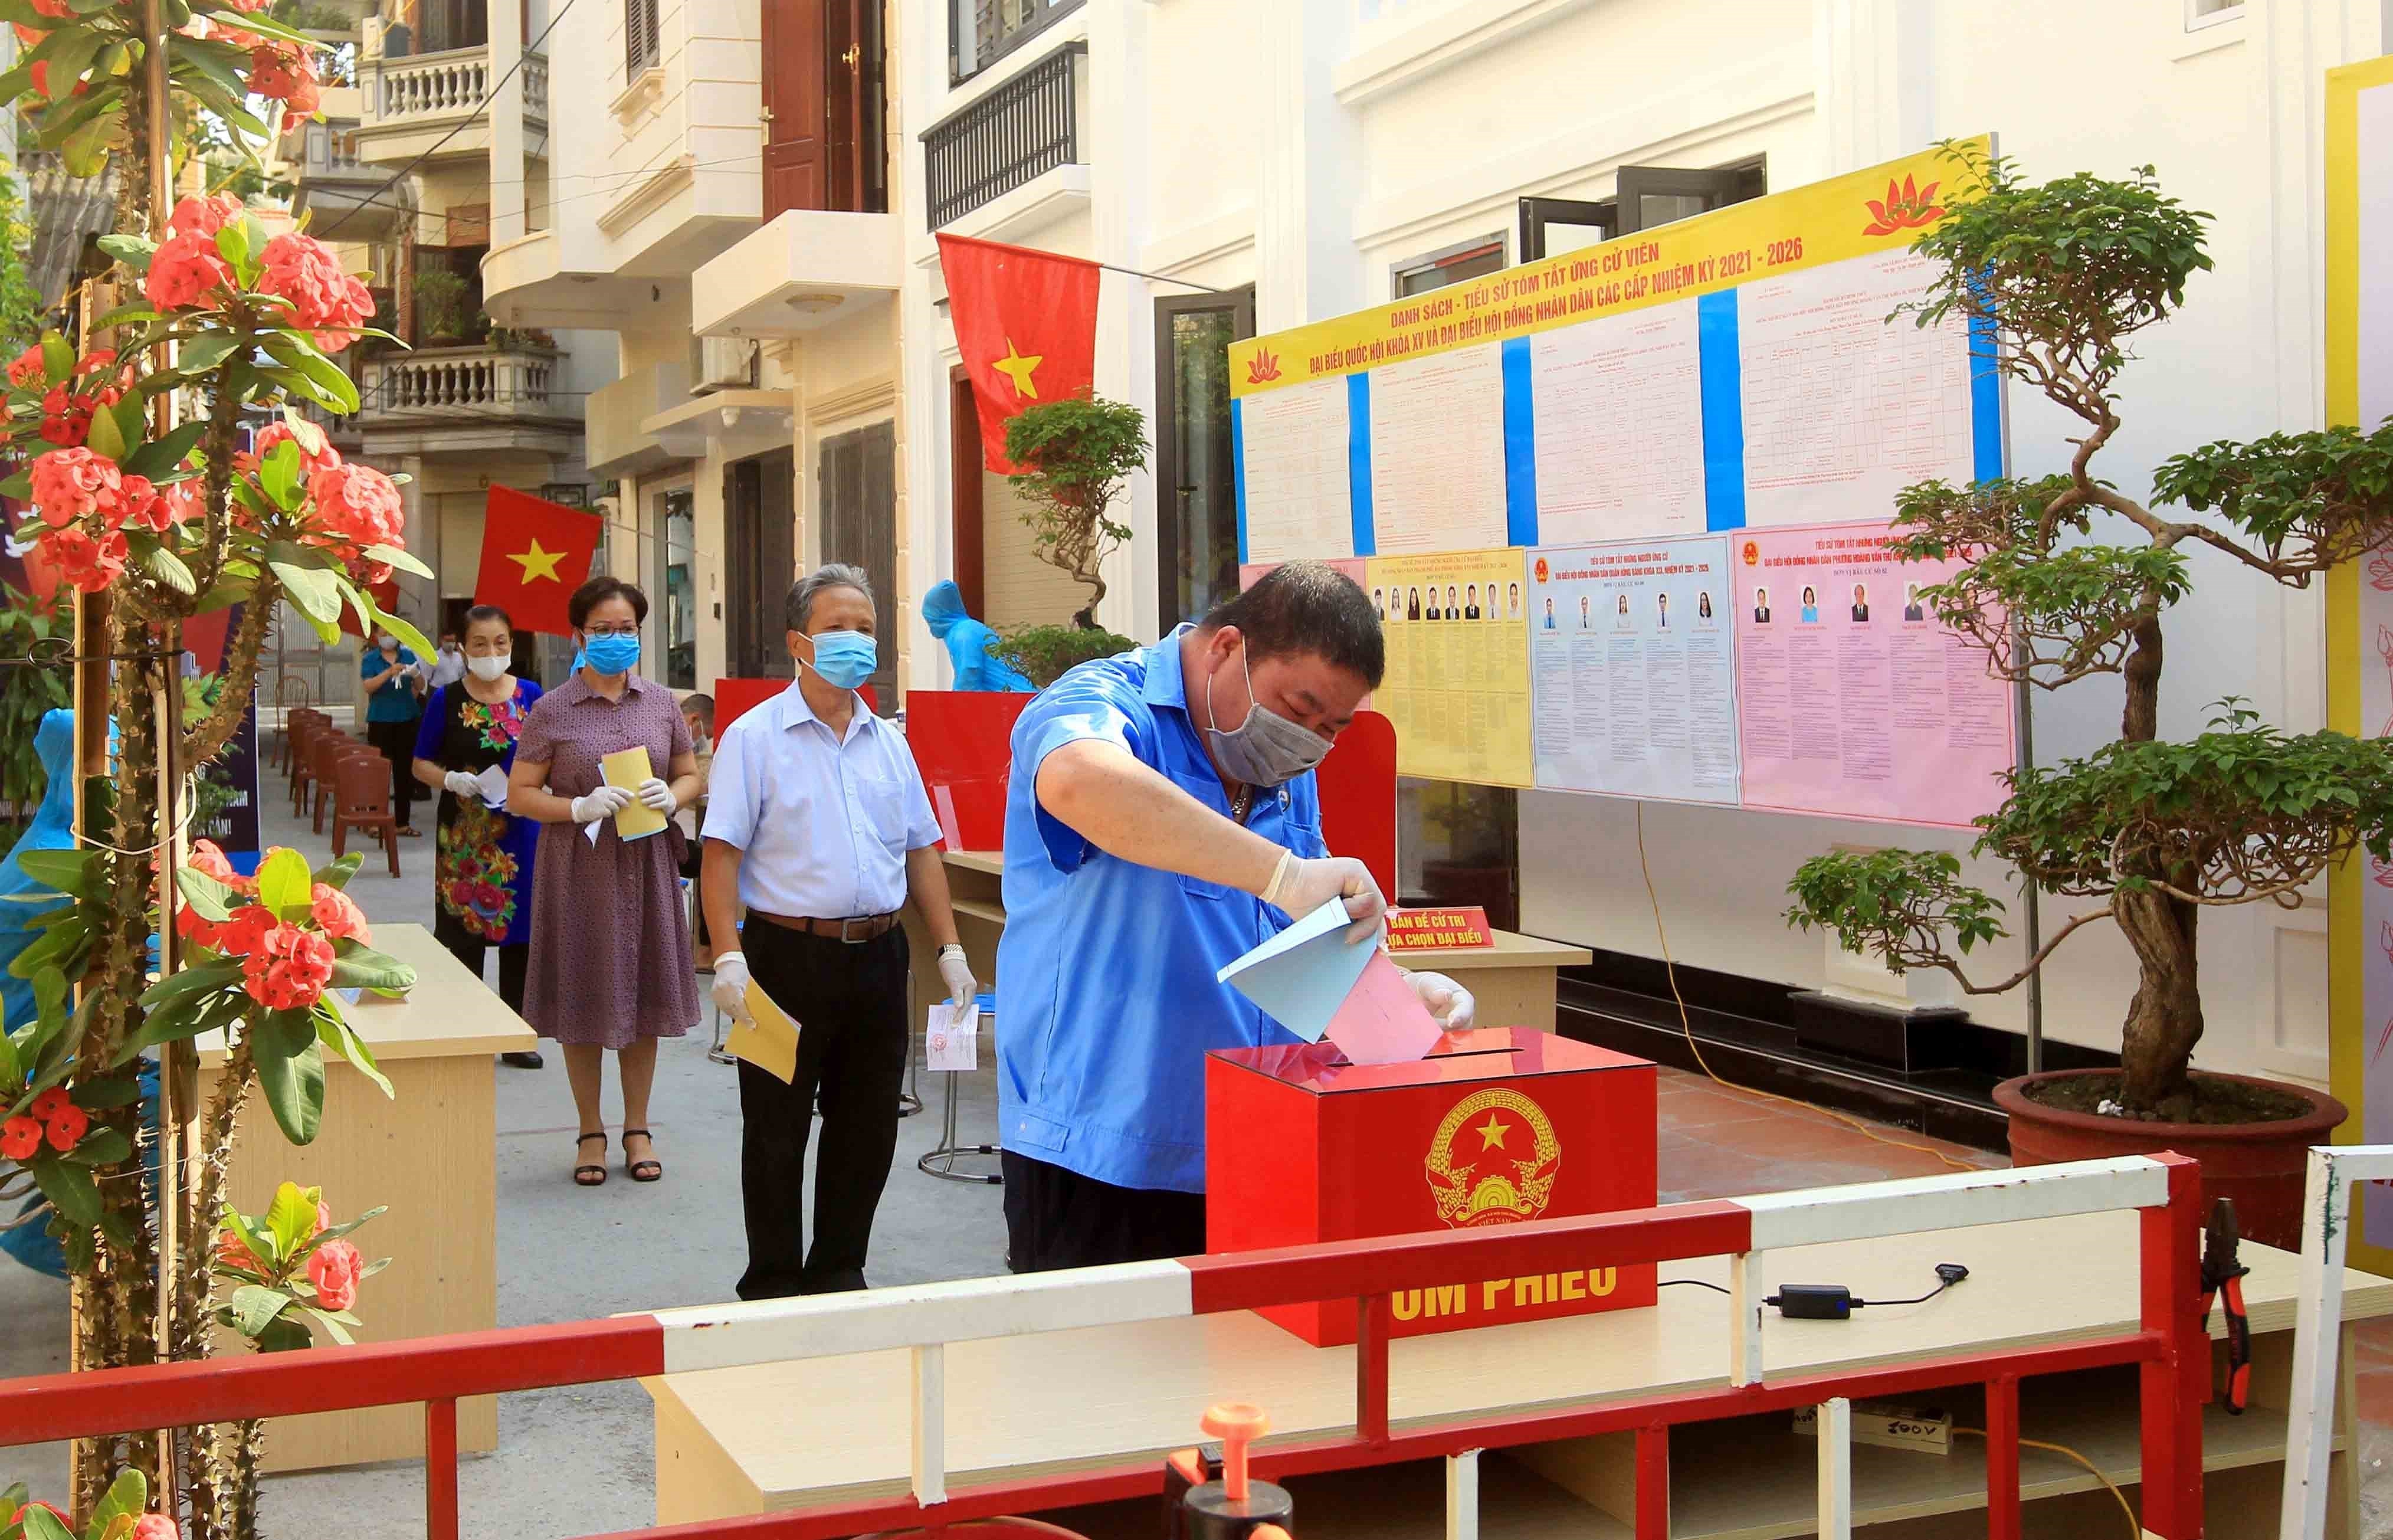 Exito de las elecciones legislativas en Vietnam gracias al poder del pueblo hinh anh 1